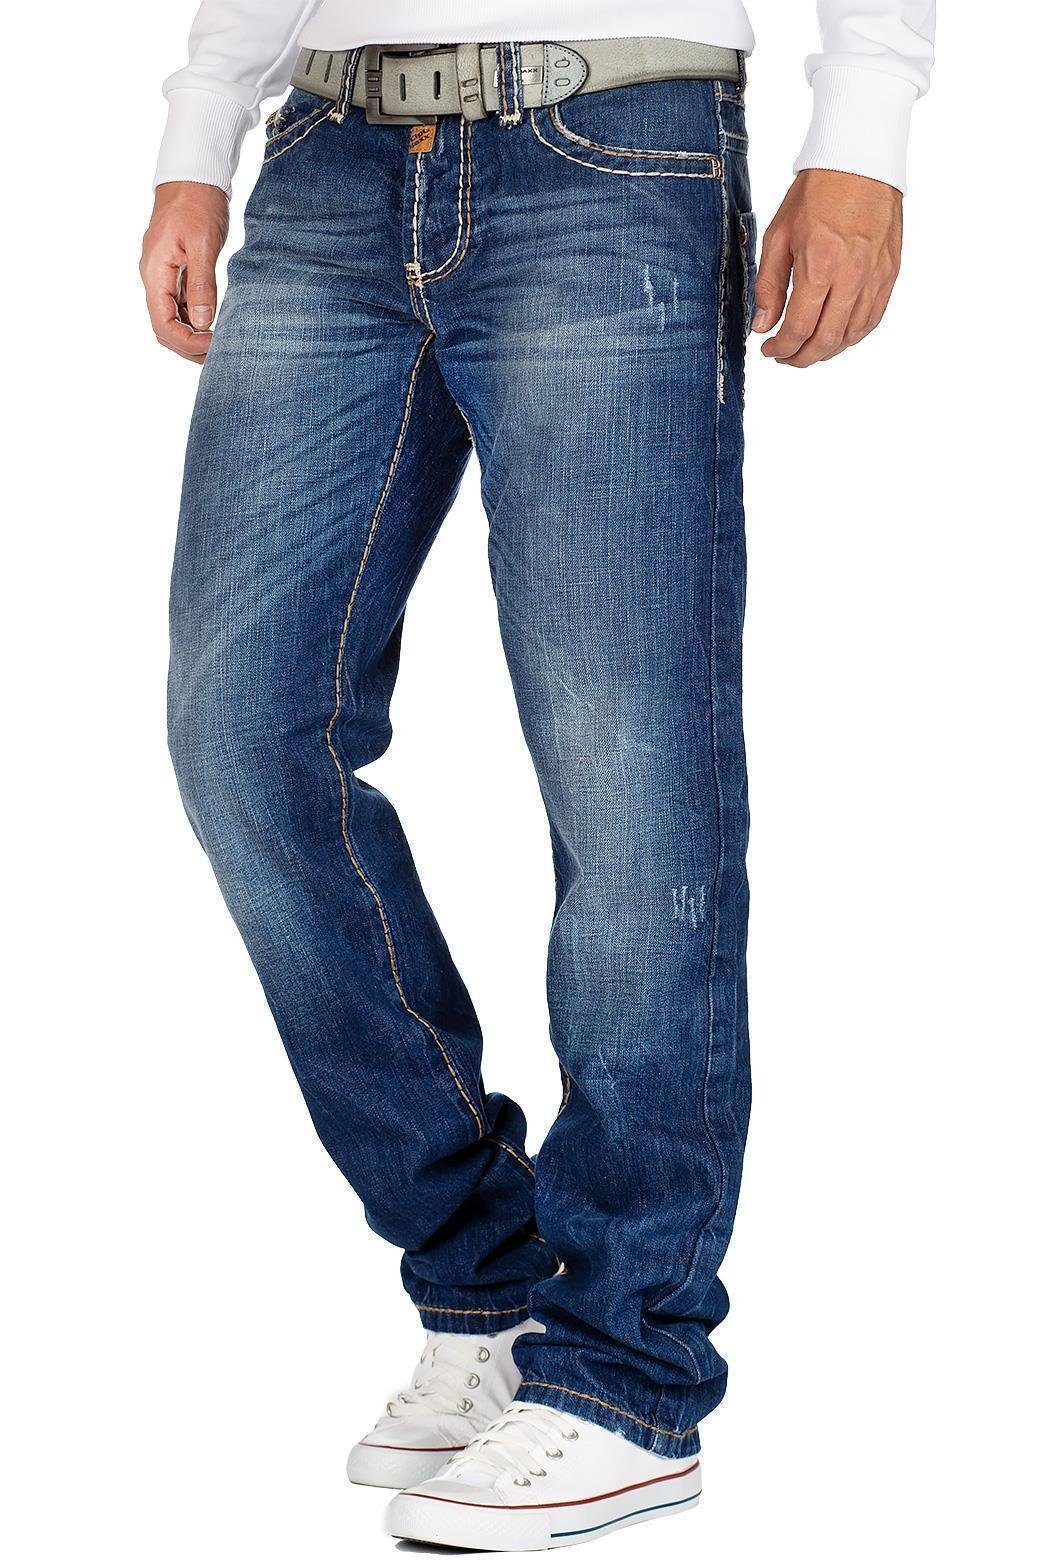 Herren Jeans Cipo & Baxx 5-Pocket-Jeans Cipo & Baxx Herren Jeans BA-C0688 mit dicken Nähten und Patch